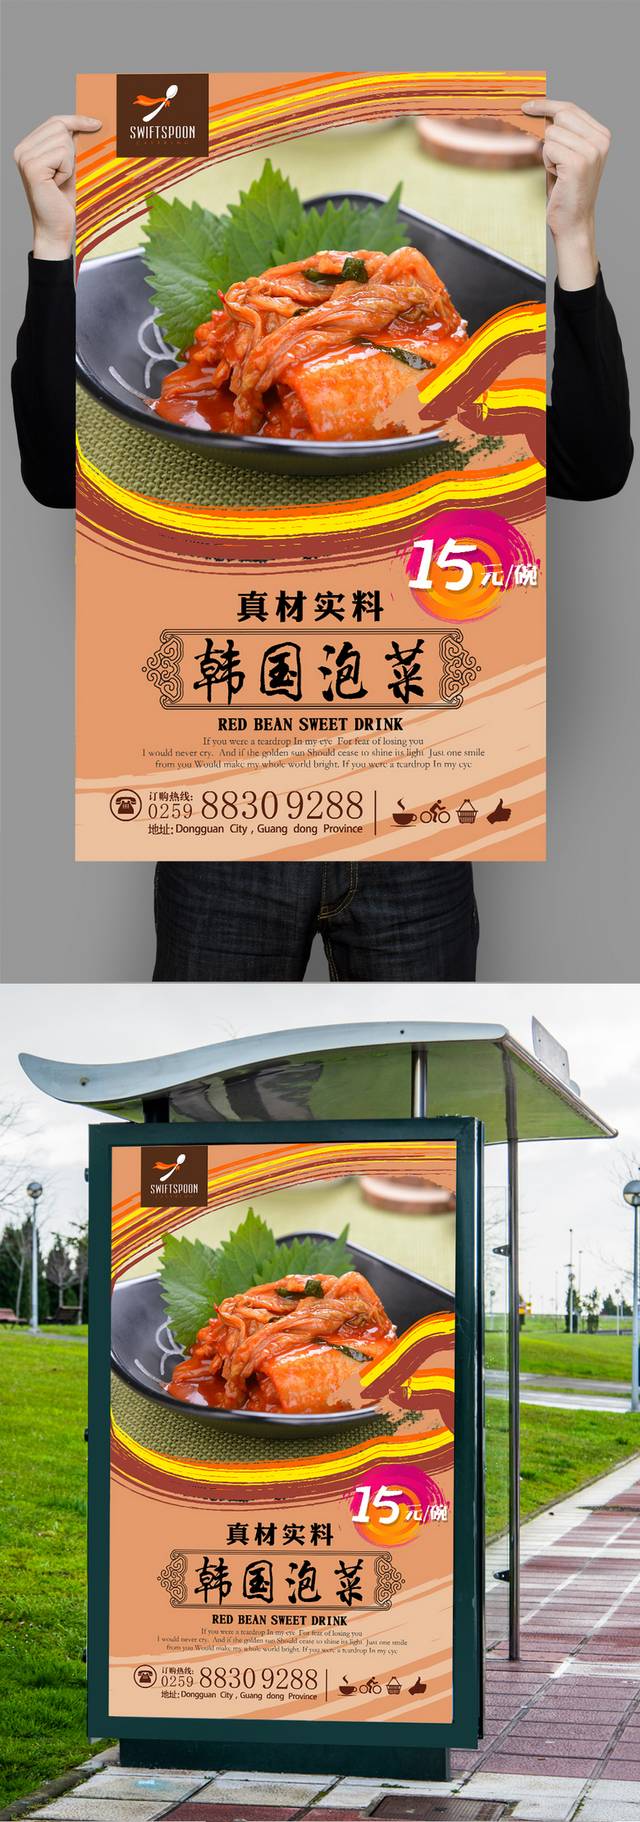 高档经典韩国泡菜宣传海报设计